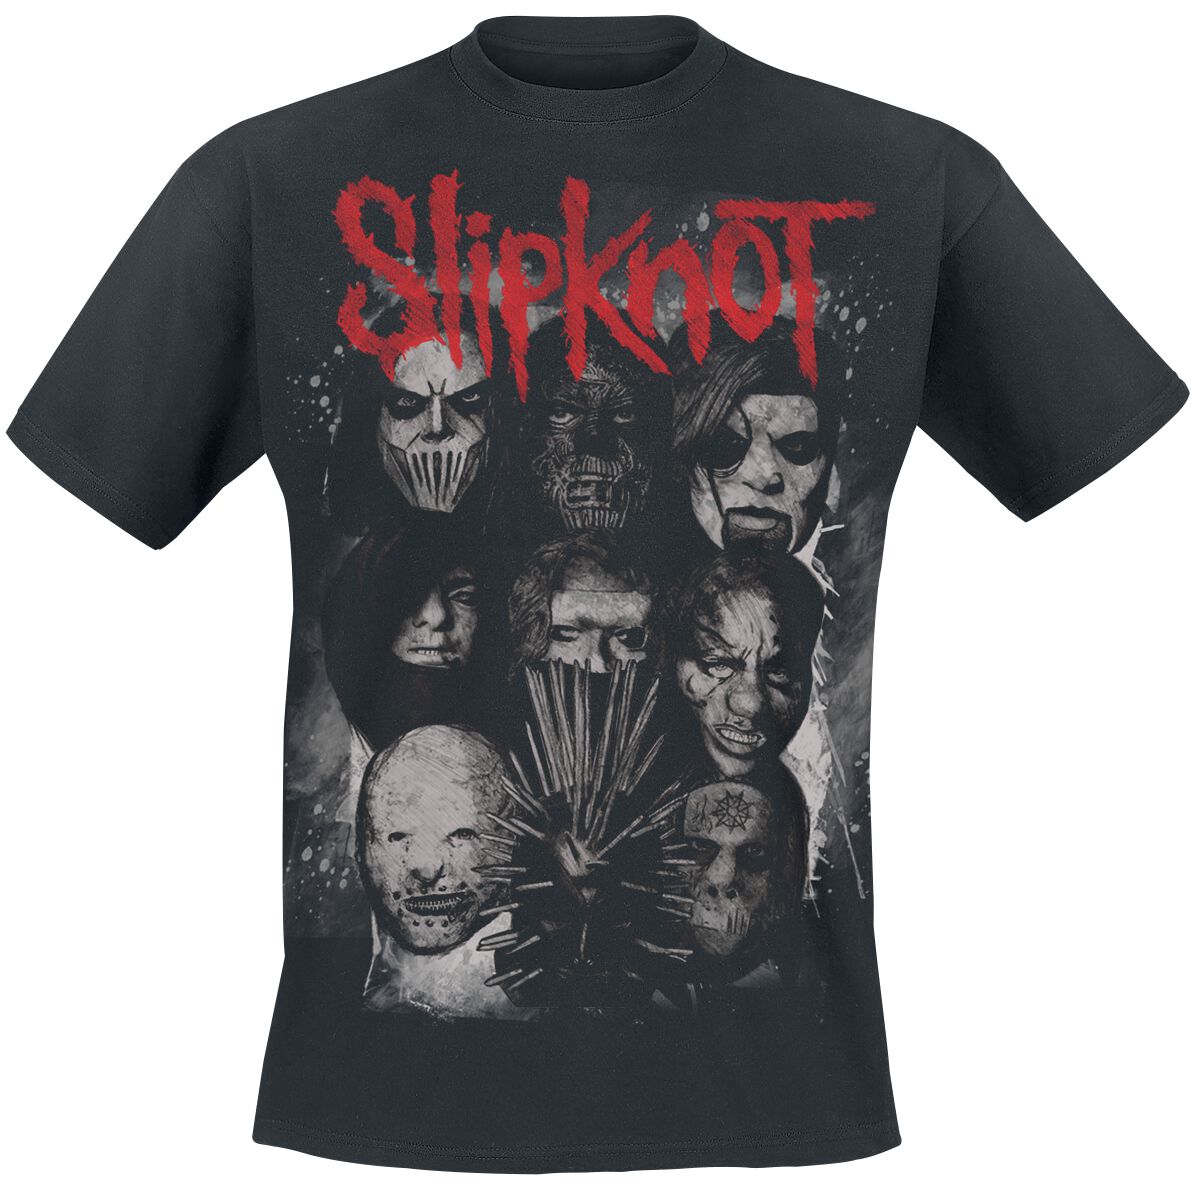 Slipknot T-Shirt - We Are Not Your Kind - Masks - S bis XXL - für Männer - Größe XL - schwarz  - Lizenziertes Merchandise!